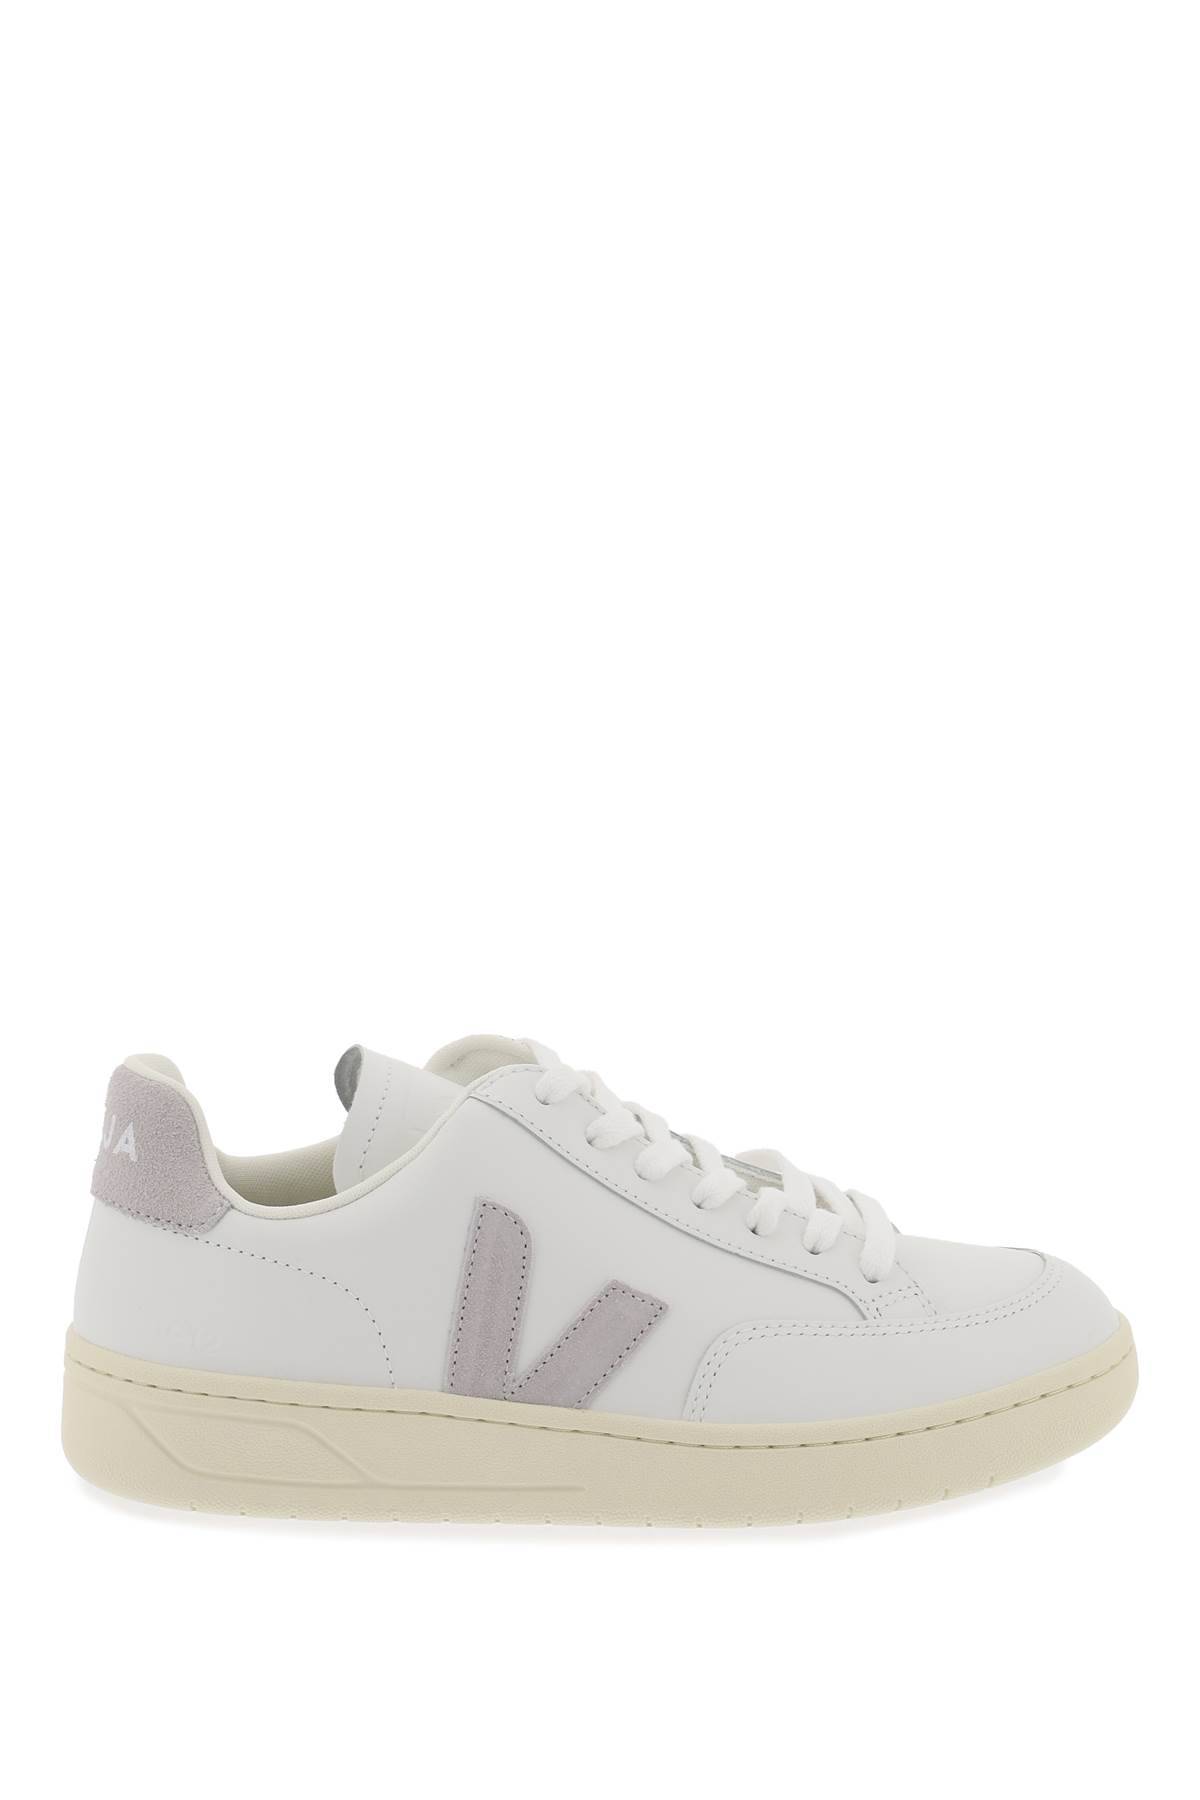 Shop Veja Leather V-12 Sneakers In White,grey